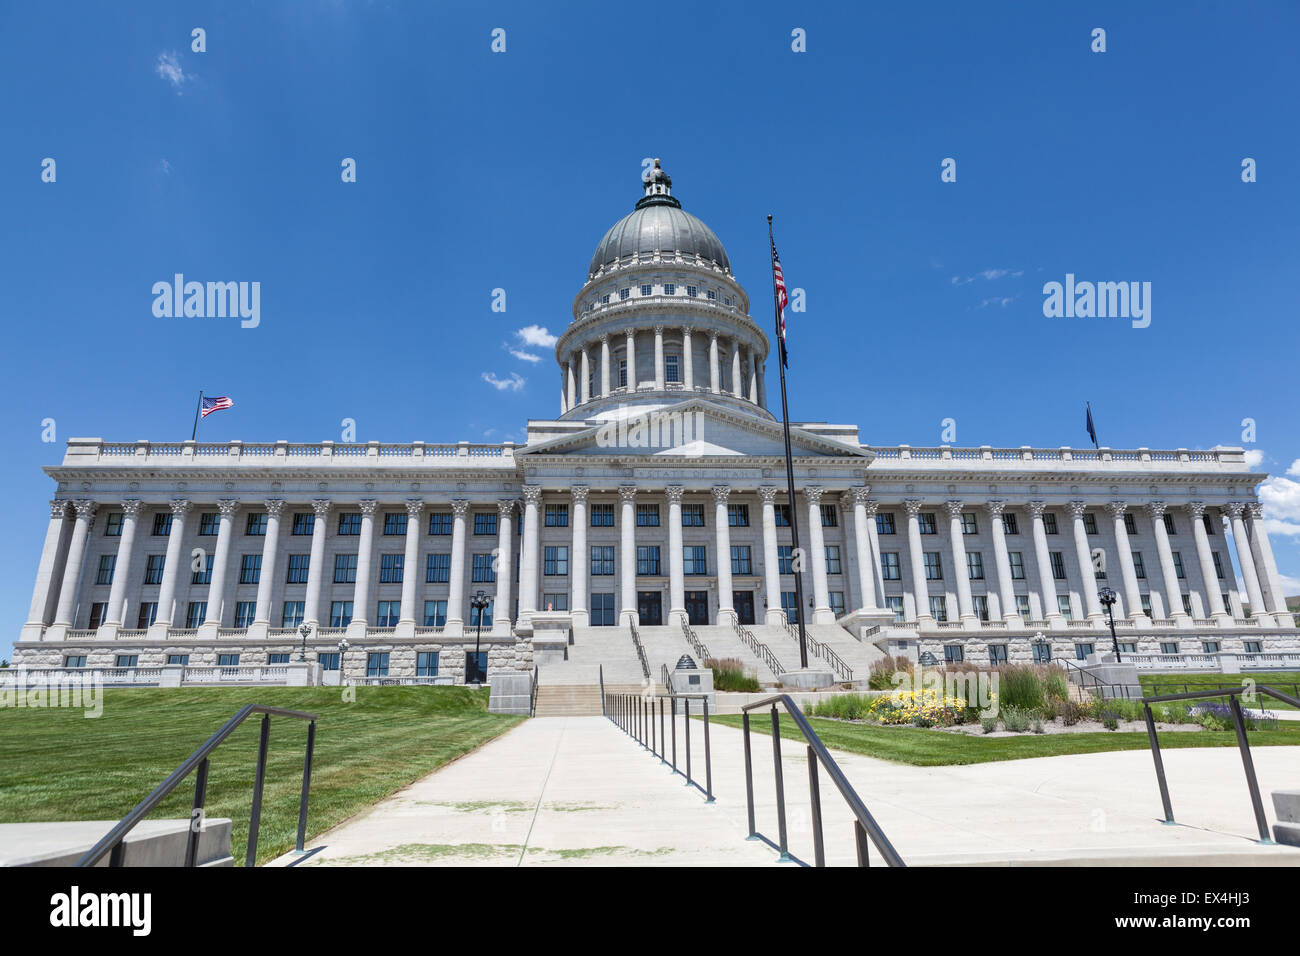 Utah State Capitol Building, Salt Lake City Stock Photo